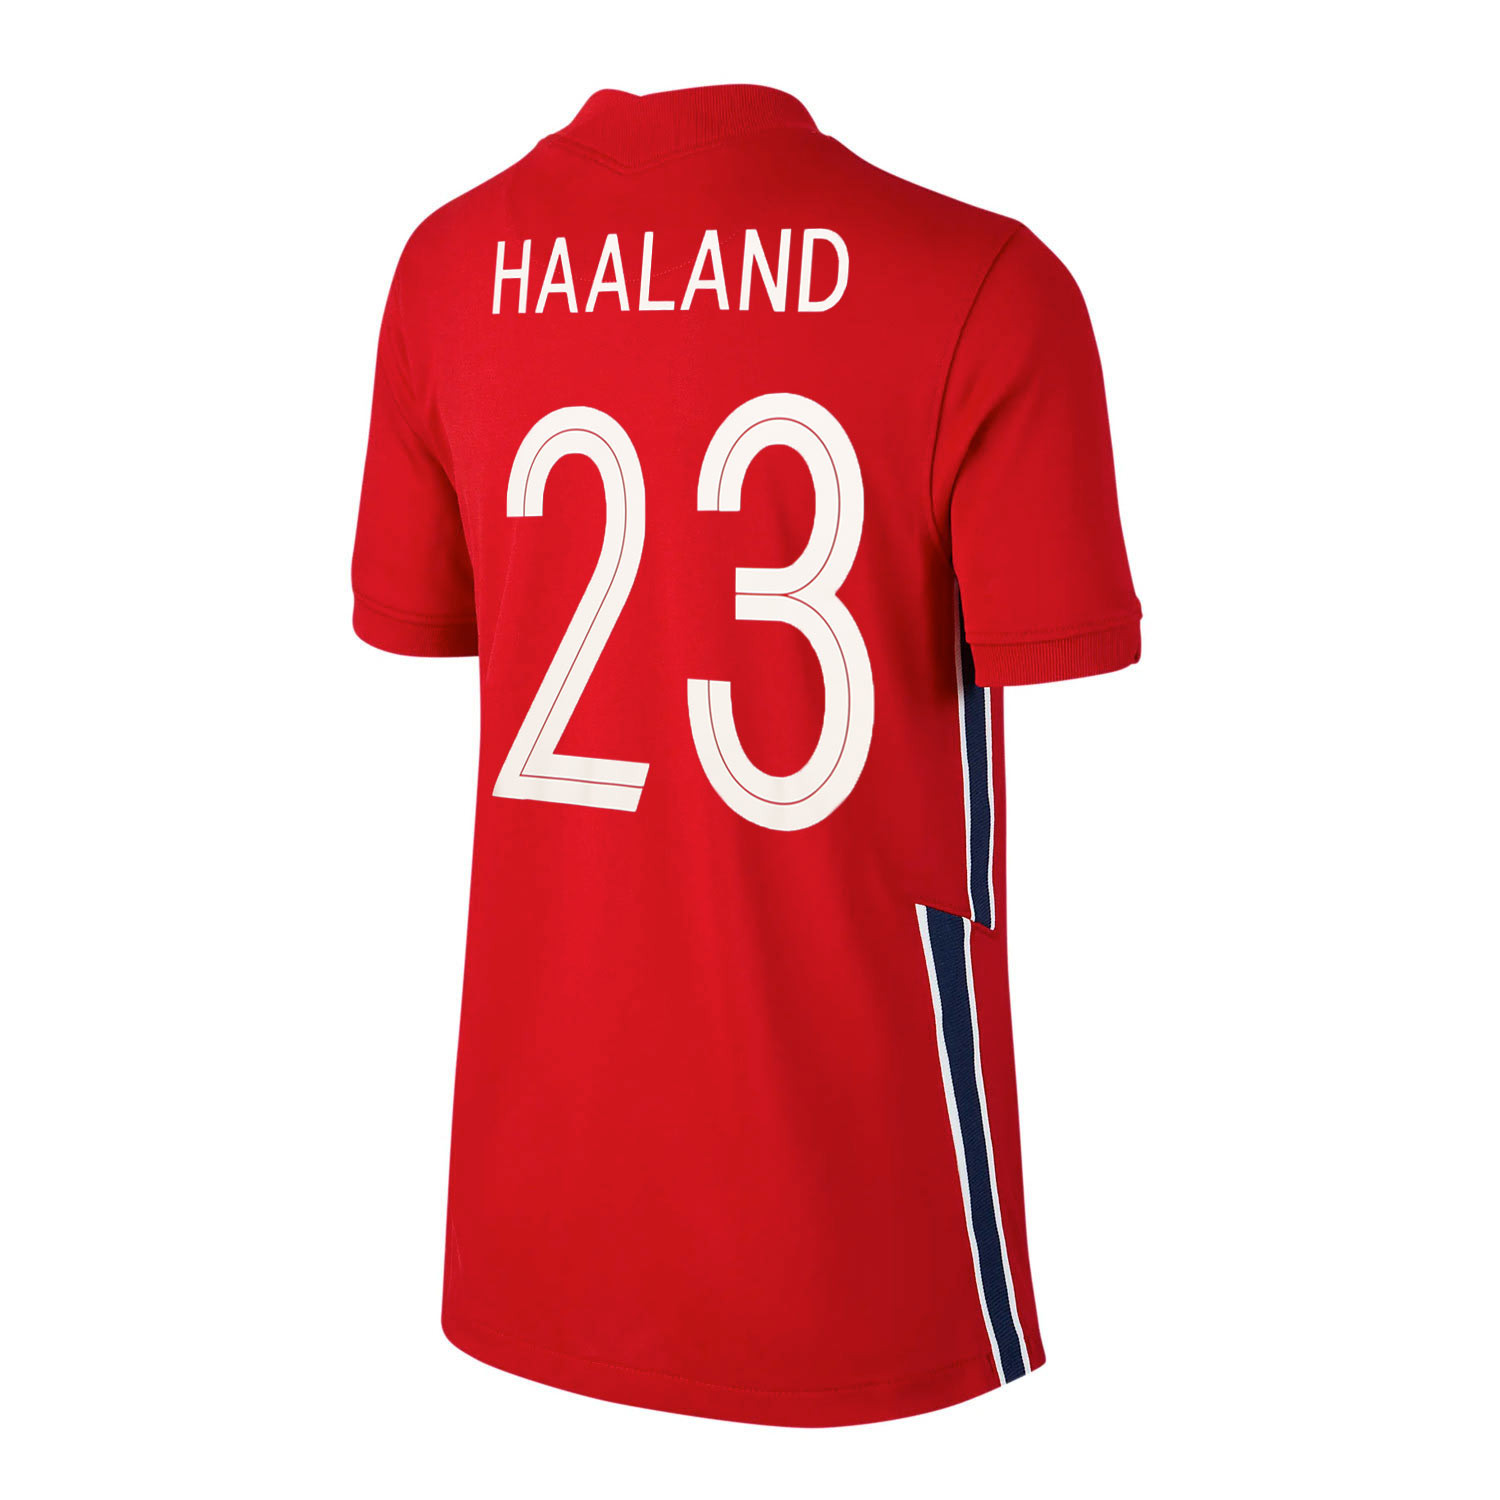 https://media.futbolmania.com/media/catalog/product/cache/1/image/0f330055bc18e2dda592b4a7c3a0ea22/C/D/CD1049-687-23_camiseta-color-rojo-nike-noruega-nino-haaland-2020-2021-stadium_1_completa-frontal.jpg